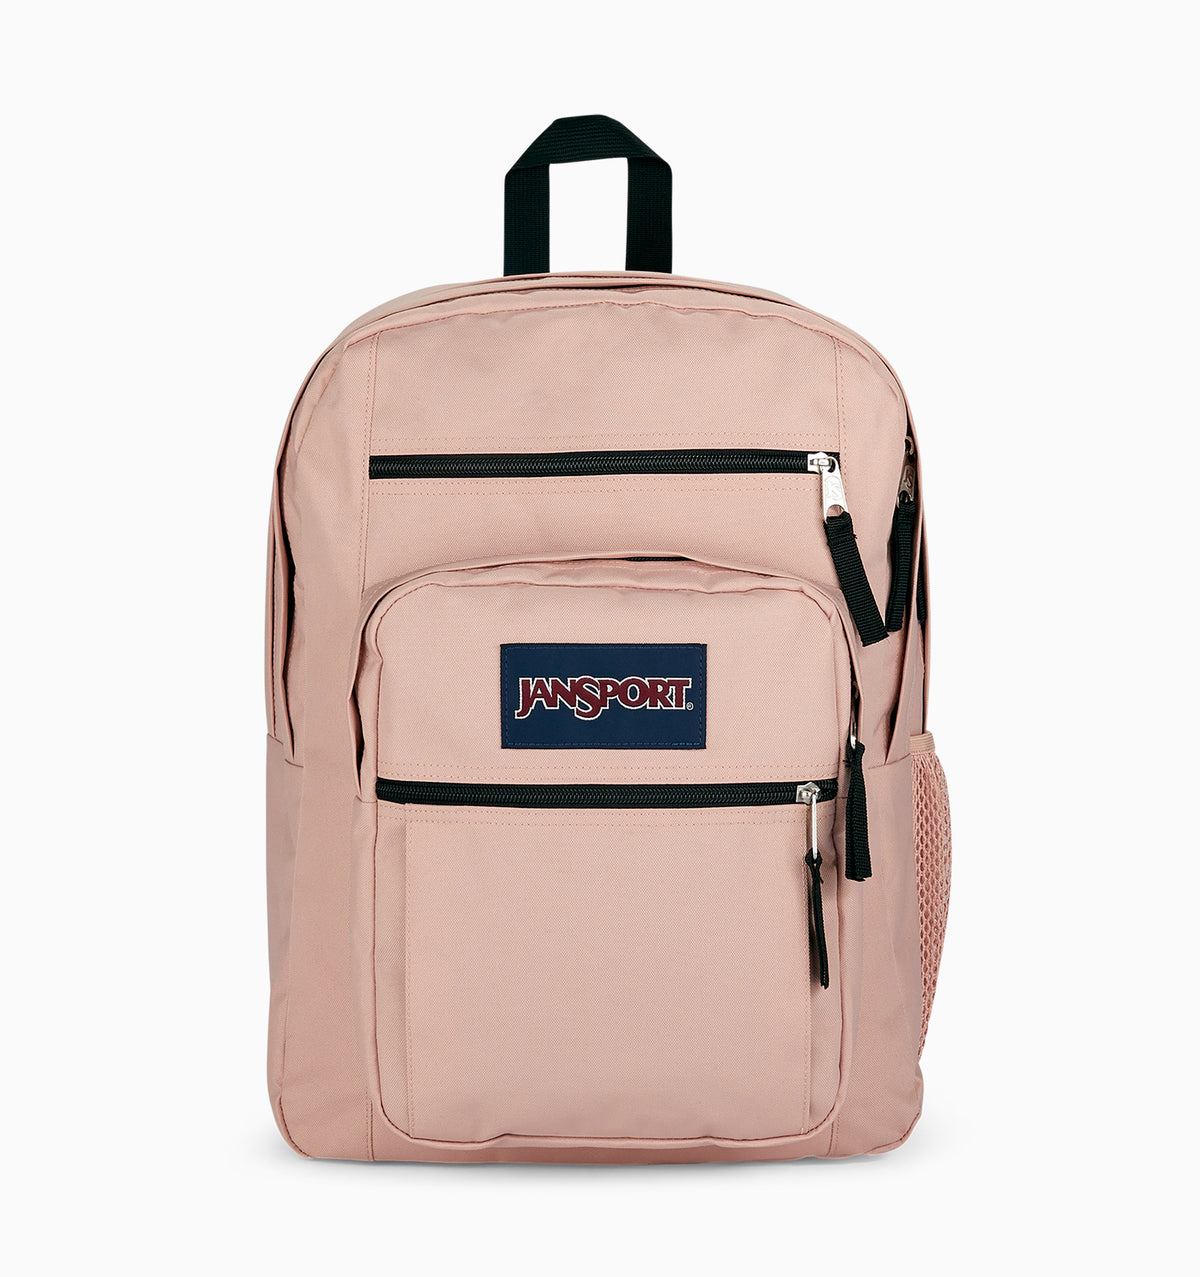 JanSport 16" Big Student Laptop Backpack 34L - Misty Rose